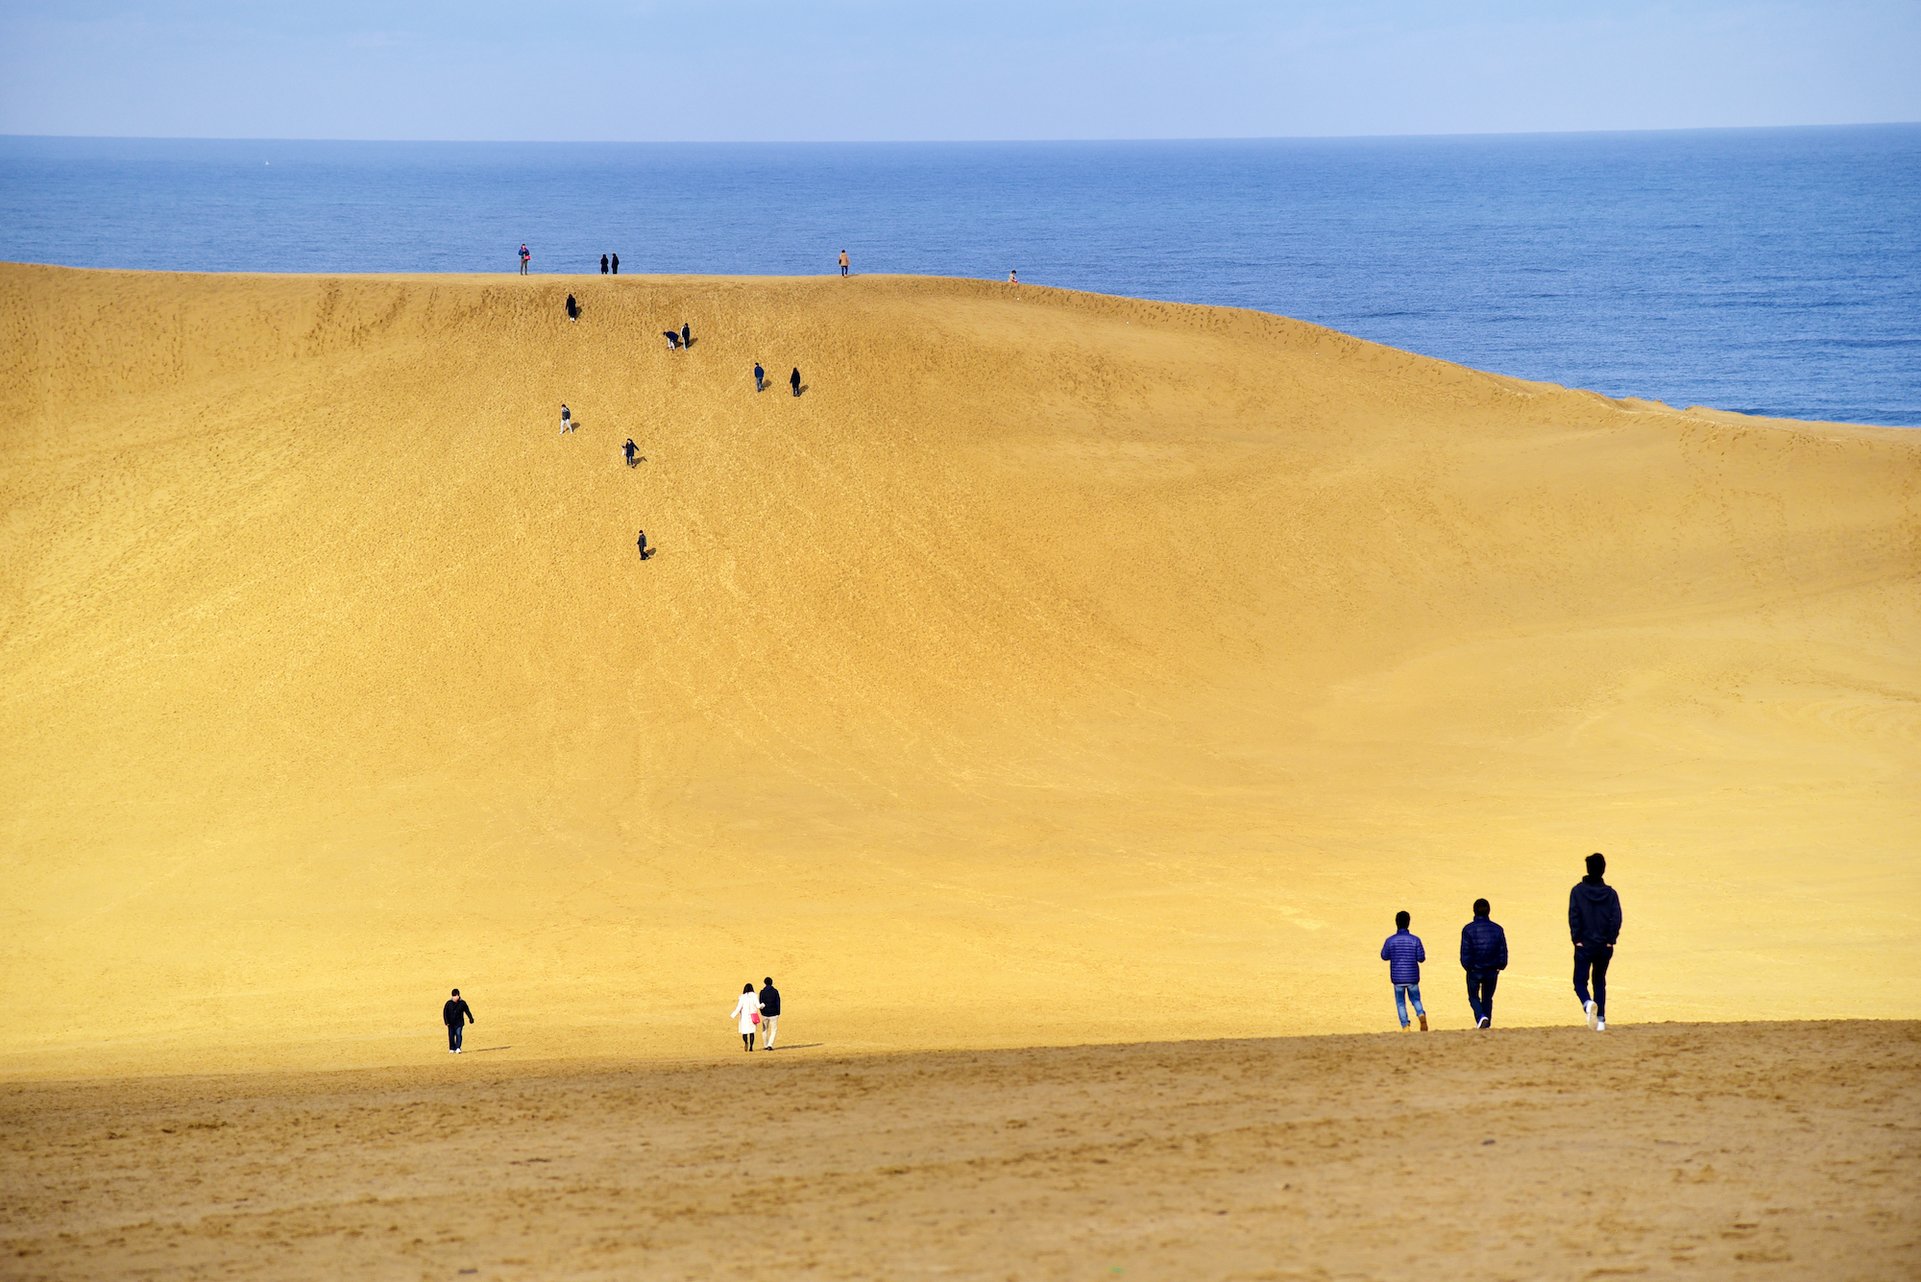 どっちが日本一 鳥取砂丘より3倍も広い砂丘が 青森 にひっそりある ページ 2 2 Trip Editor